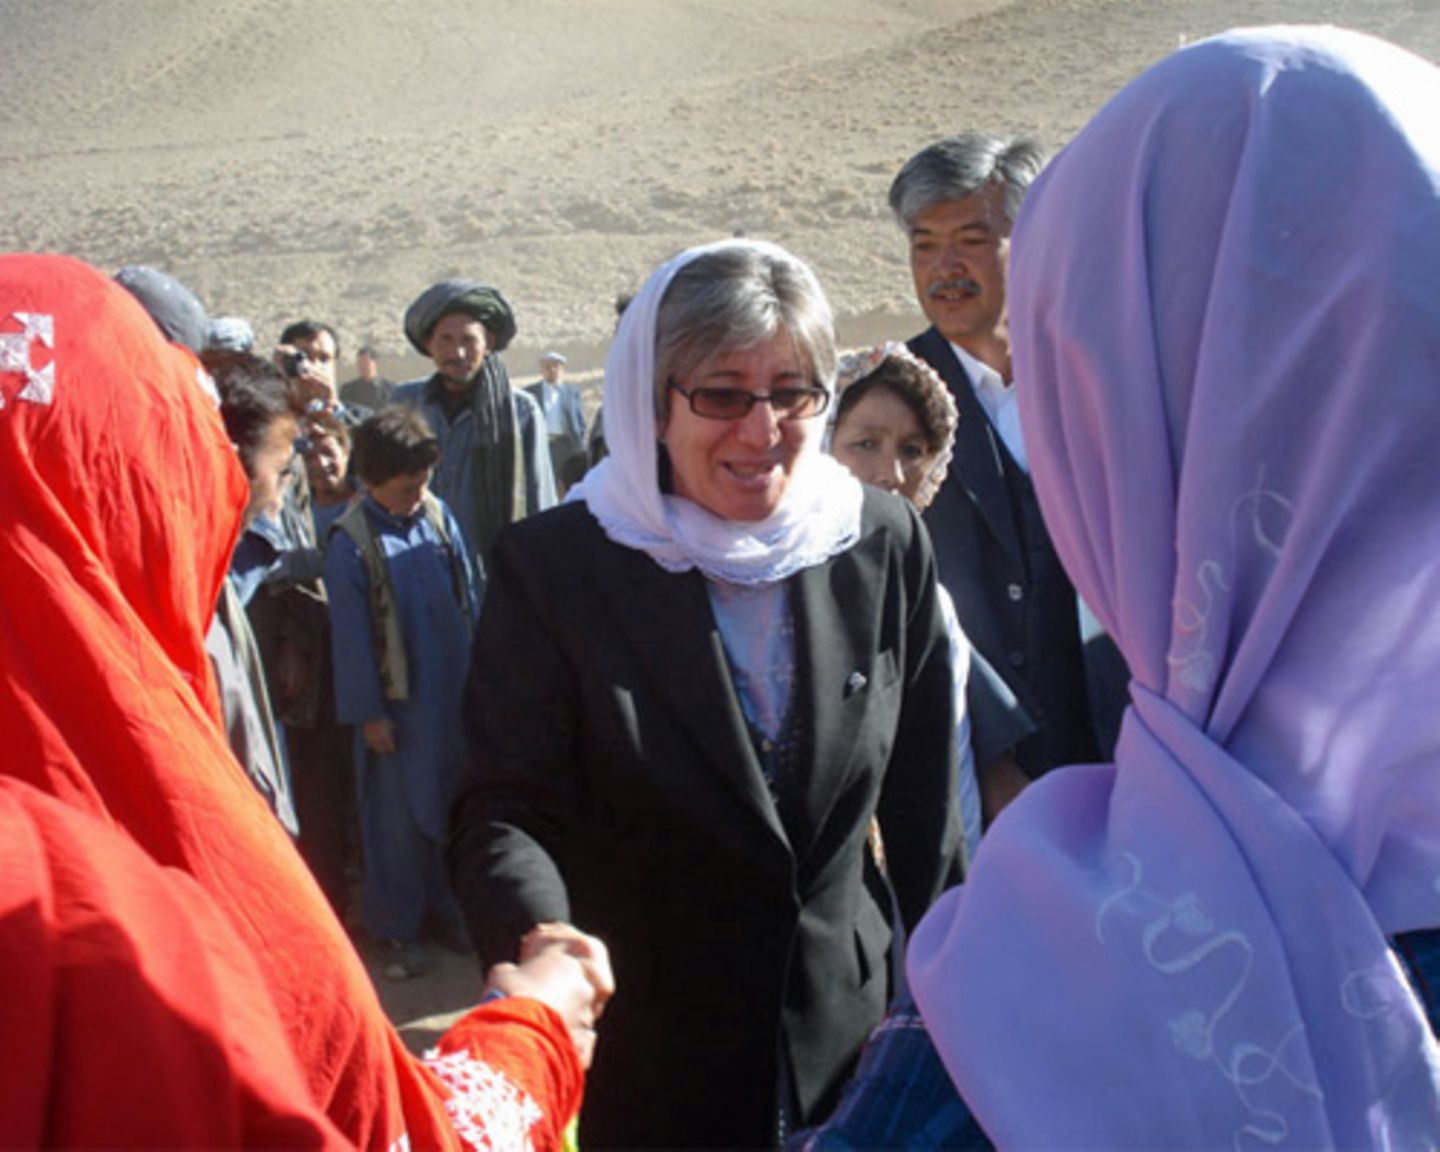 Was ist ihr Ziel? Sima Samar träumt von einem friedlichen und freien Afghanistan. "Am wichtigsten ist es, dass die Menschen Bildung bekommen. Bildung ist der Schlüssel gegen Armut und für eine fortschrittliche Gesellschaft, in der die Menschenwürde respektiert wird." Dafür wird sie weiter kämpfen. Unermüdlich. Mehr bei BRIGITTE.de: Frauen in Afghanistan: Die Generalin Islam: Die Burka verbieten? Mehr Sinn, weniger Show: Die Welt wird weiblich